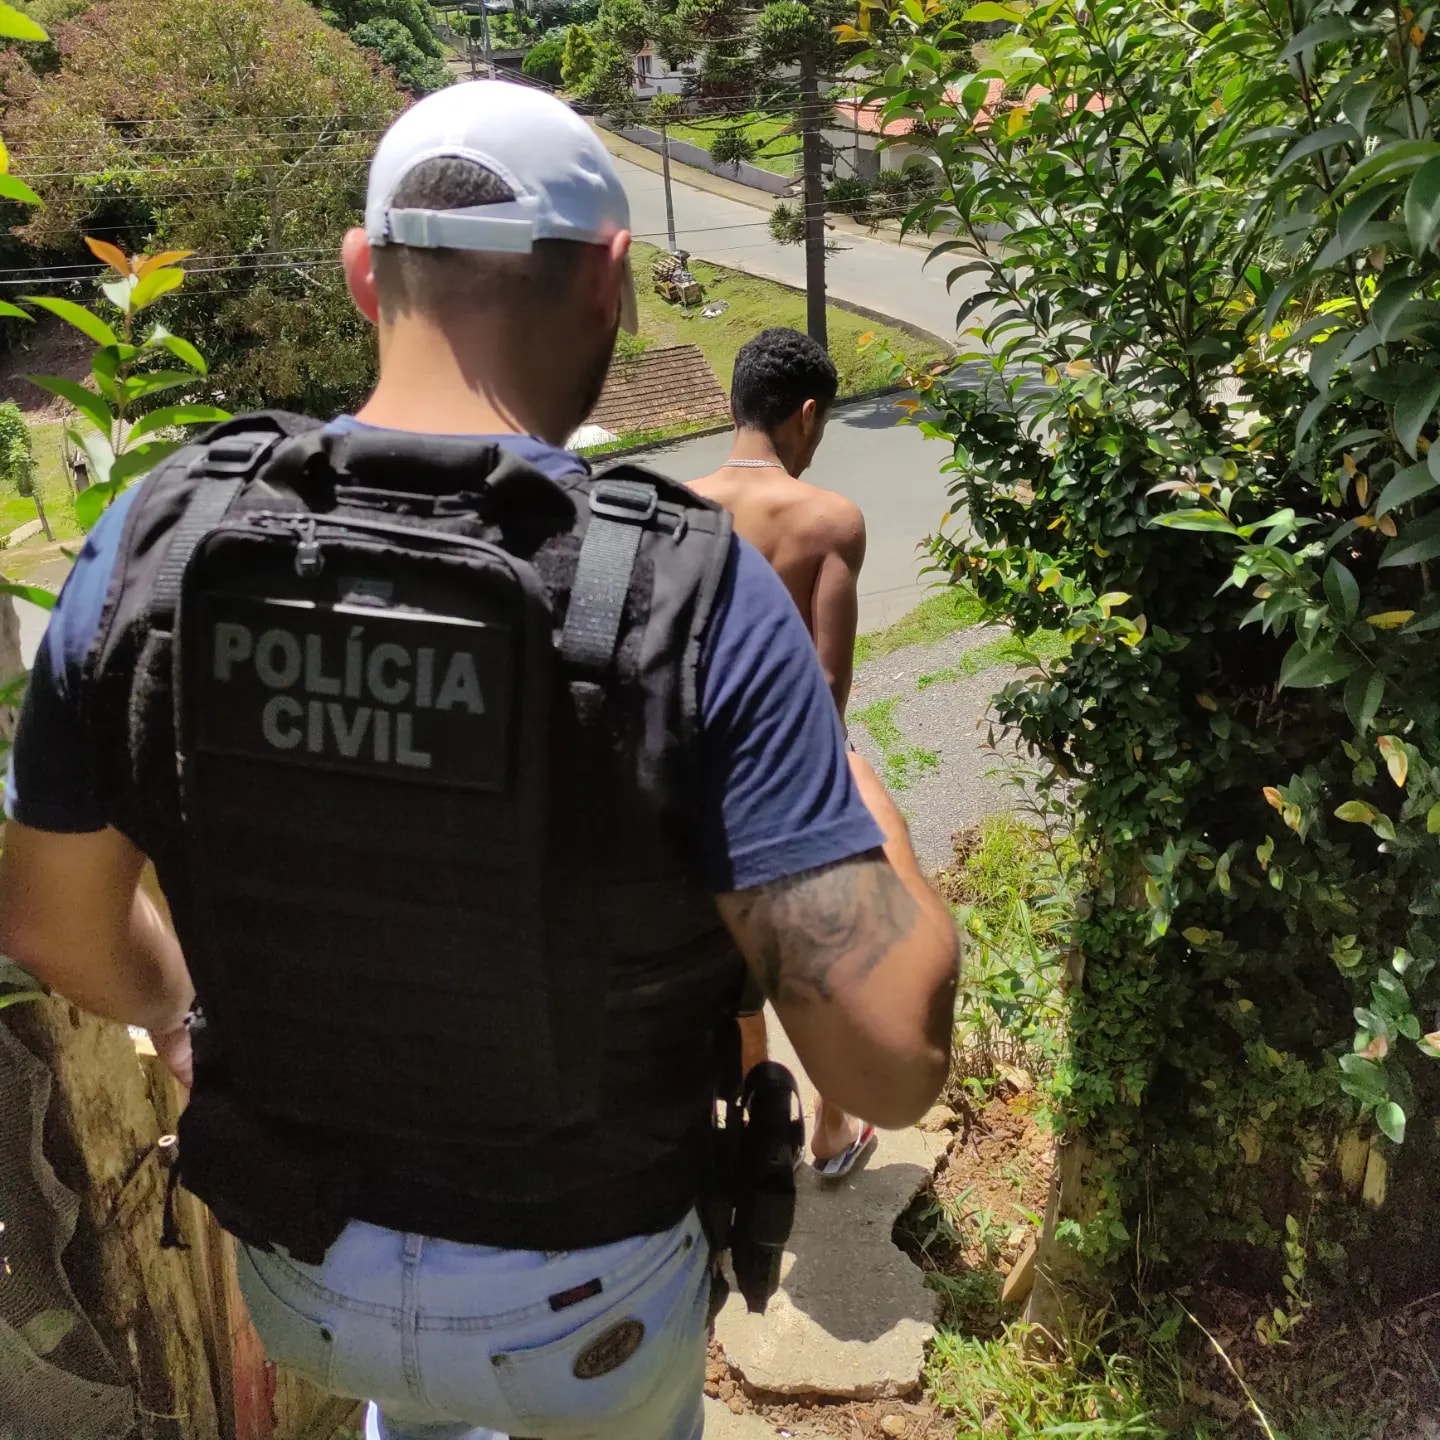 Policiais Civis que prenderam ladrão no Vale do Itajaí irão à corregedoria após reclamação do preso